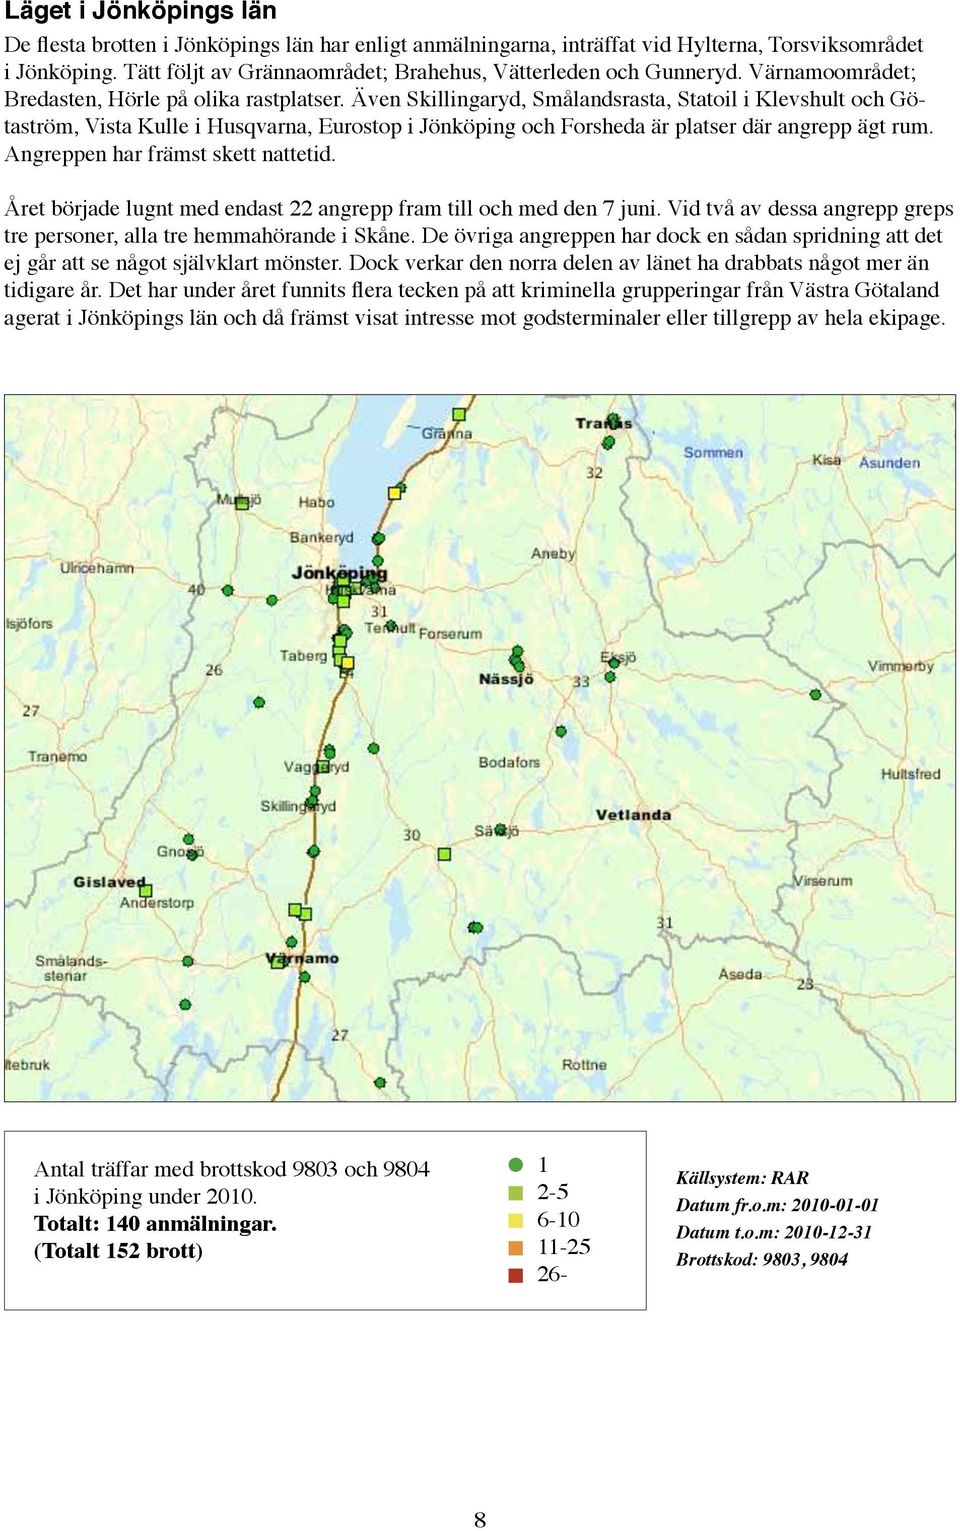 Även Skillingaryd, Smålandsrasta, Statoil i Klevshult och Götaström, Vista Kulle i Husqvarna, Eurostop i Jönköping och Forsheda är platser där angrepp ägt rum. Angreppen har främst skett nattetid.